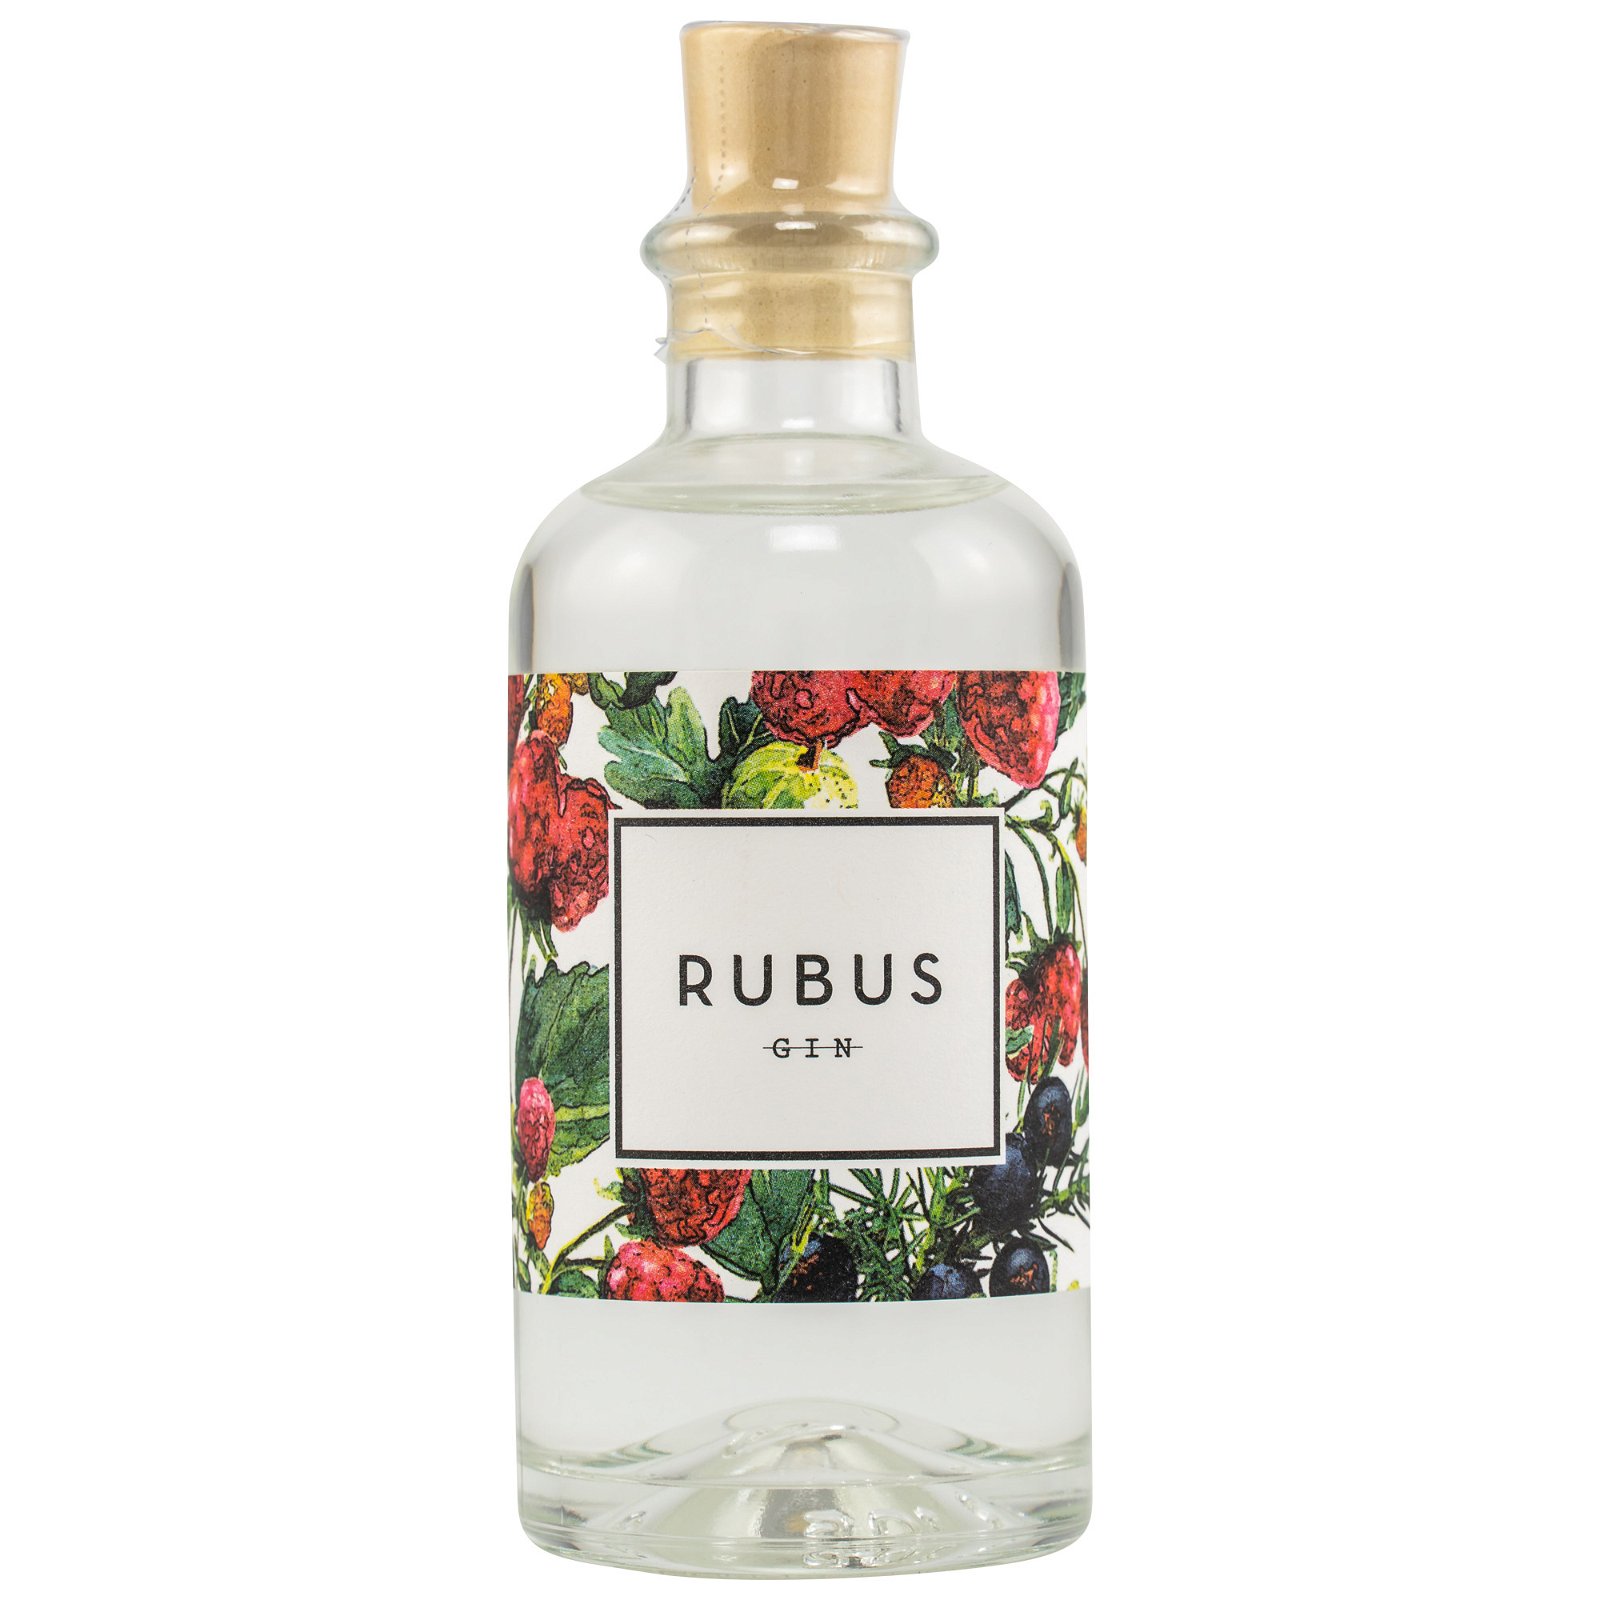 Rubus Gin (100ml)